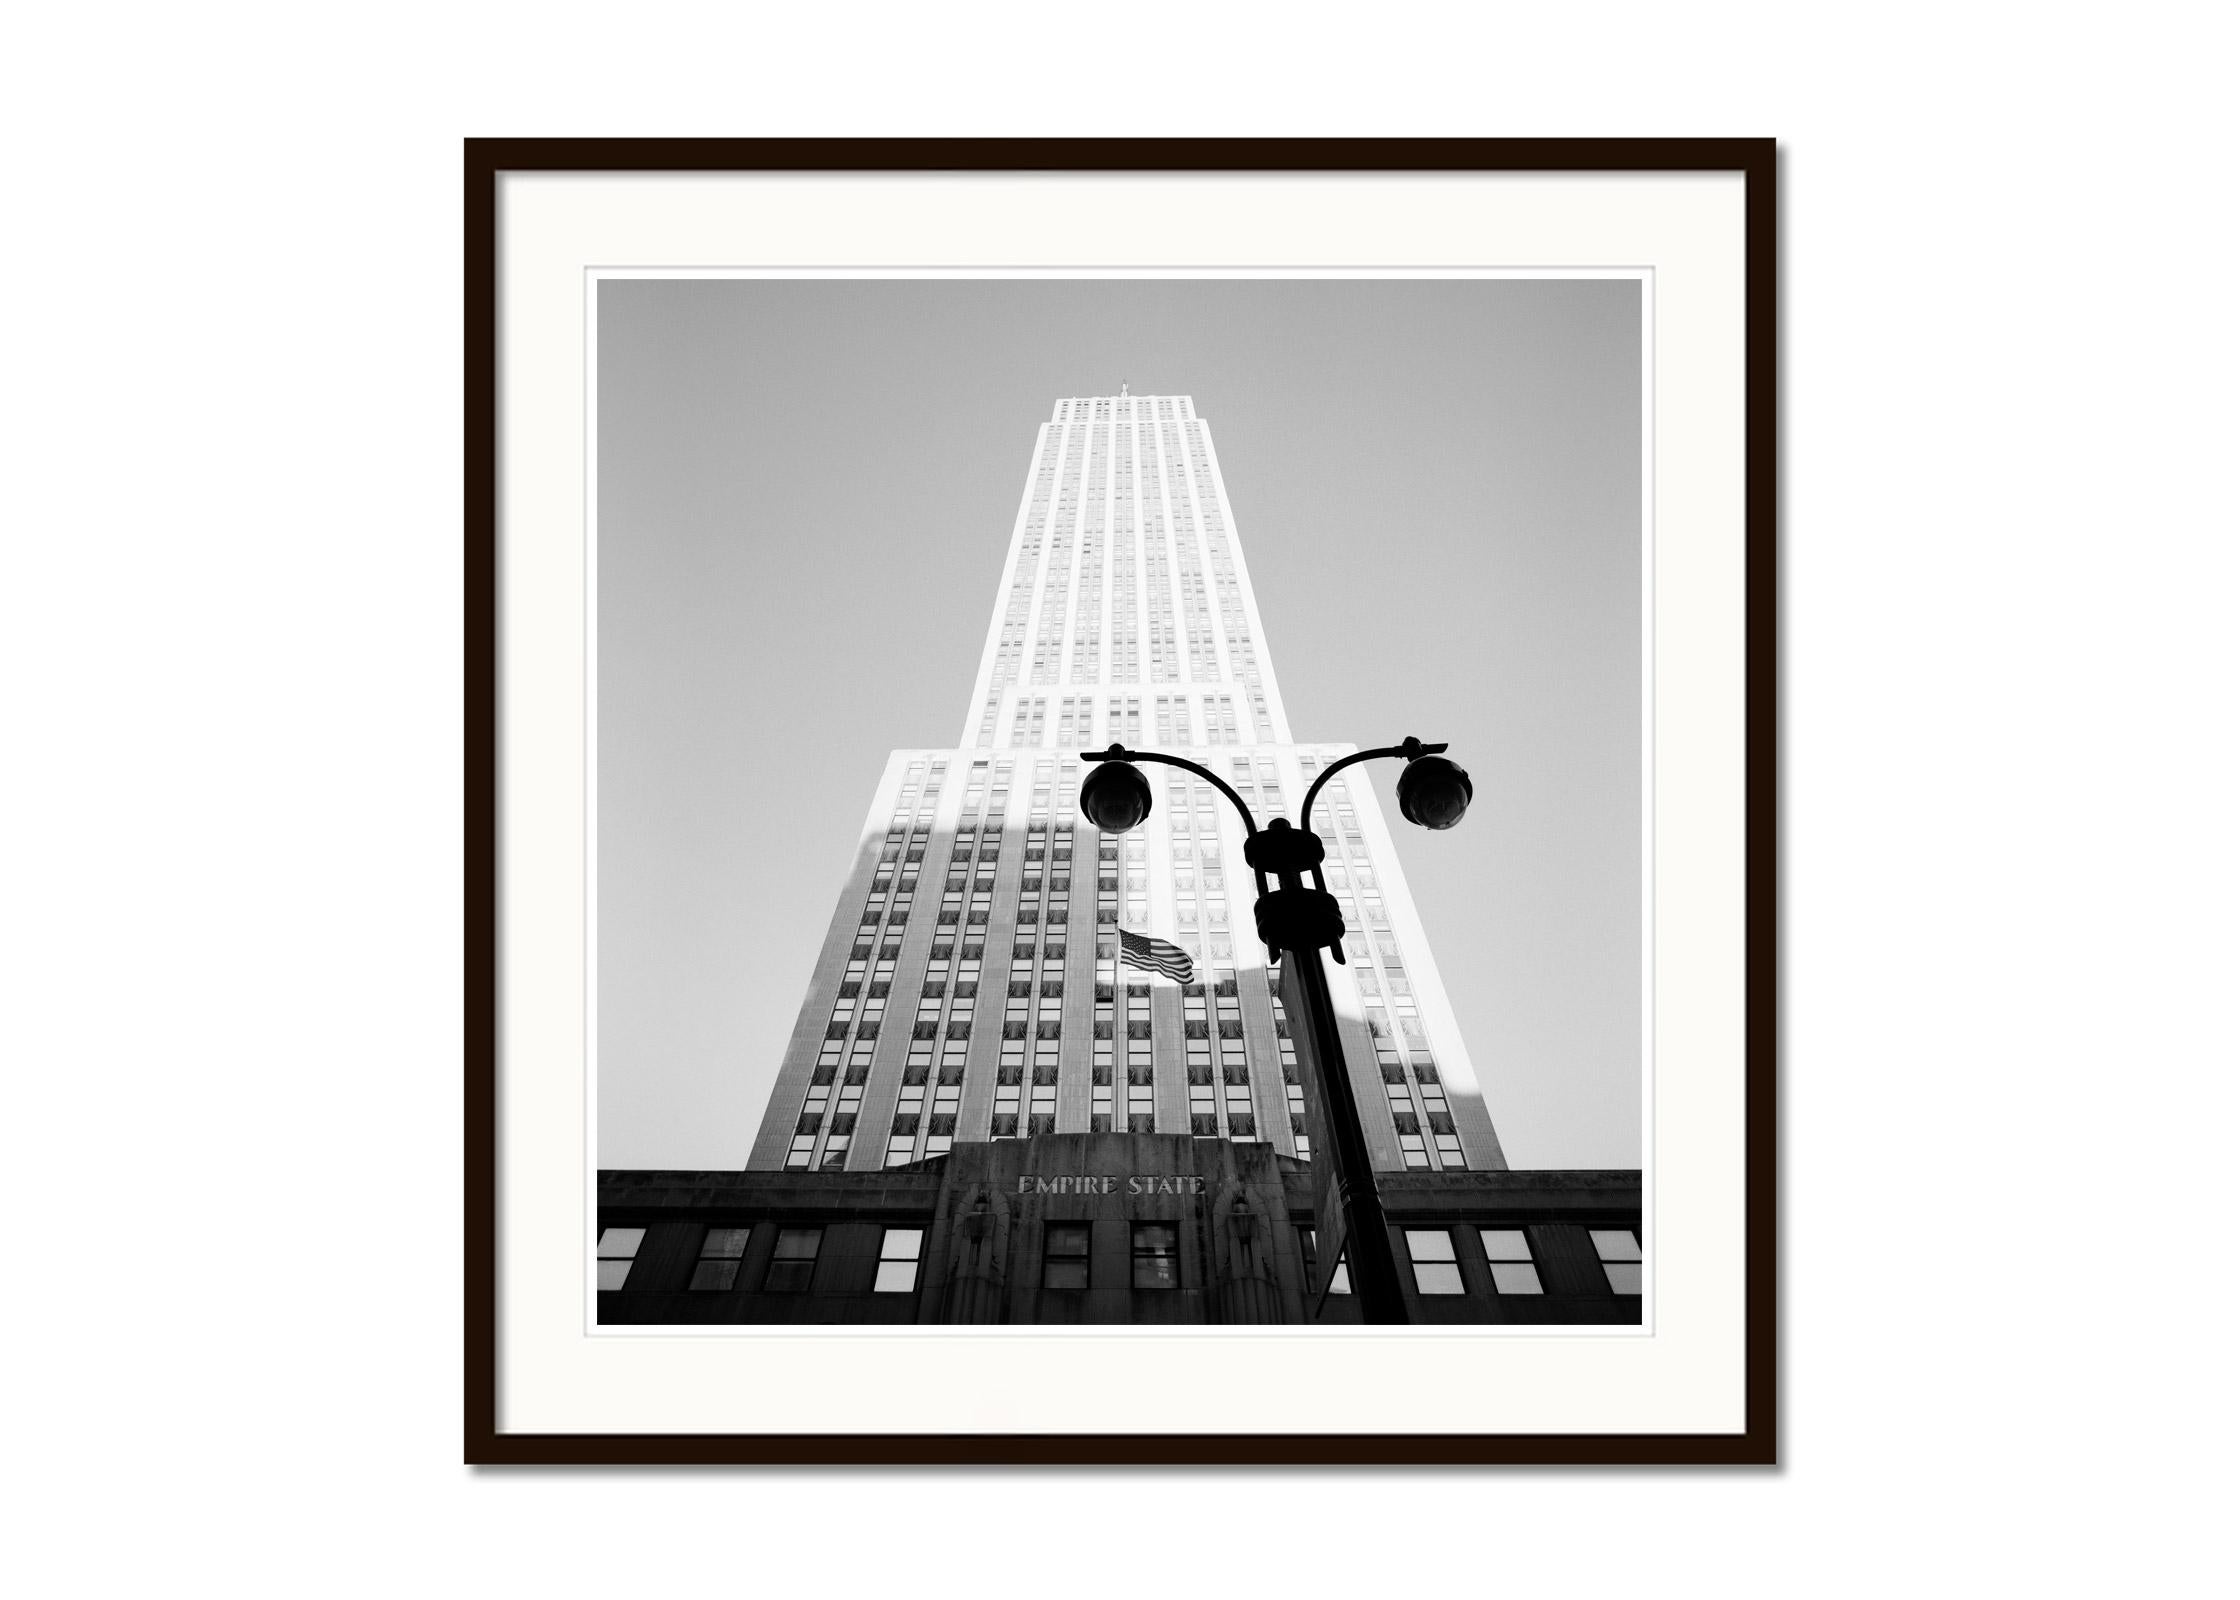 Empire State Building, New York City, Schwarz-Weiß-Fotografie, Kunststadtlandschaft (Grau), Black and White Photograph, von Gerald Berghammer